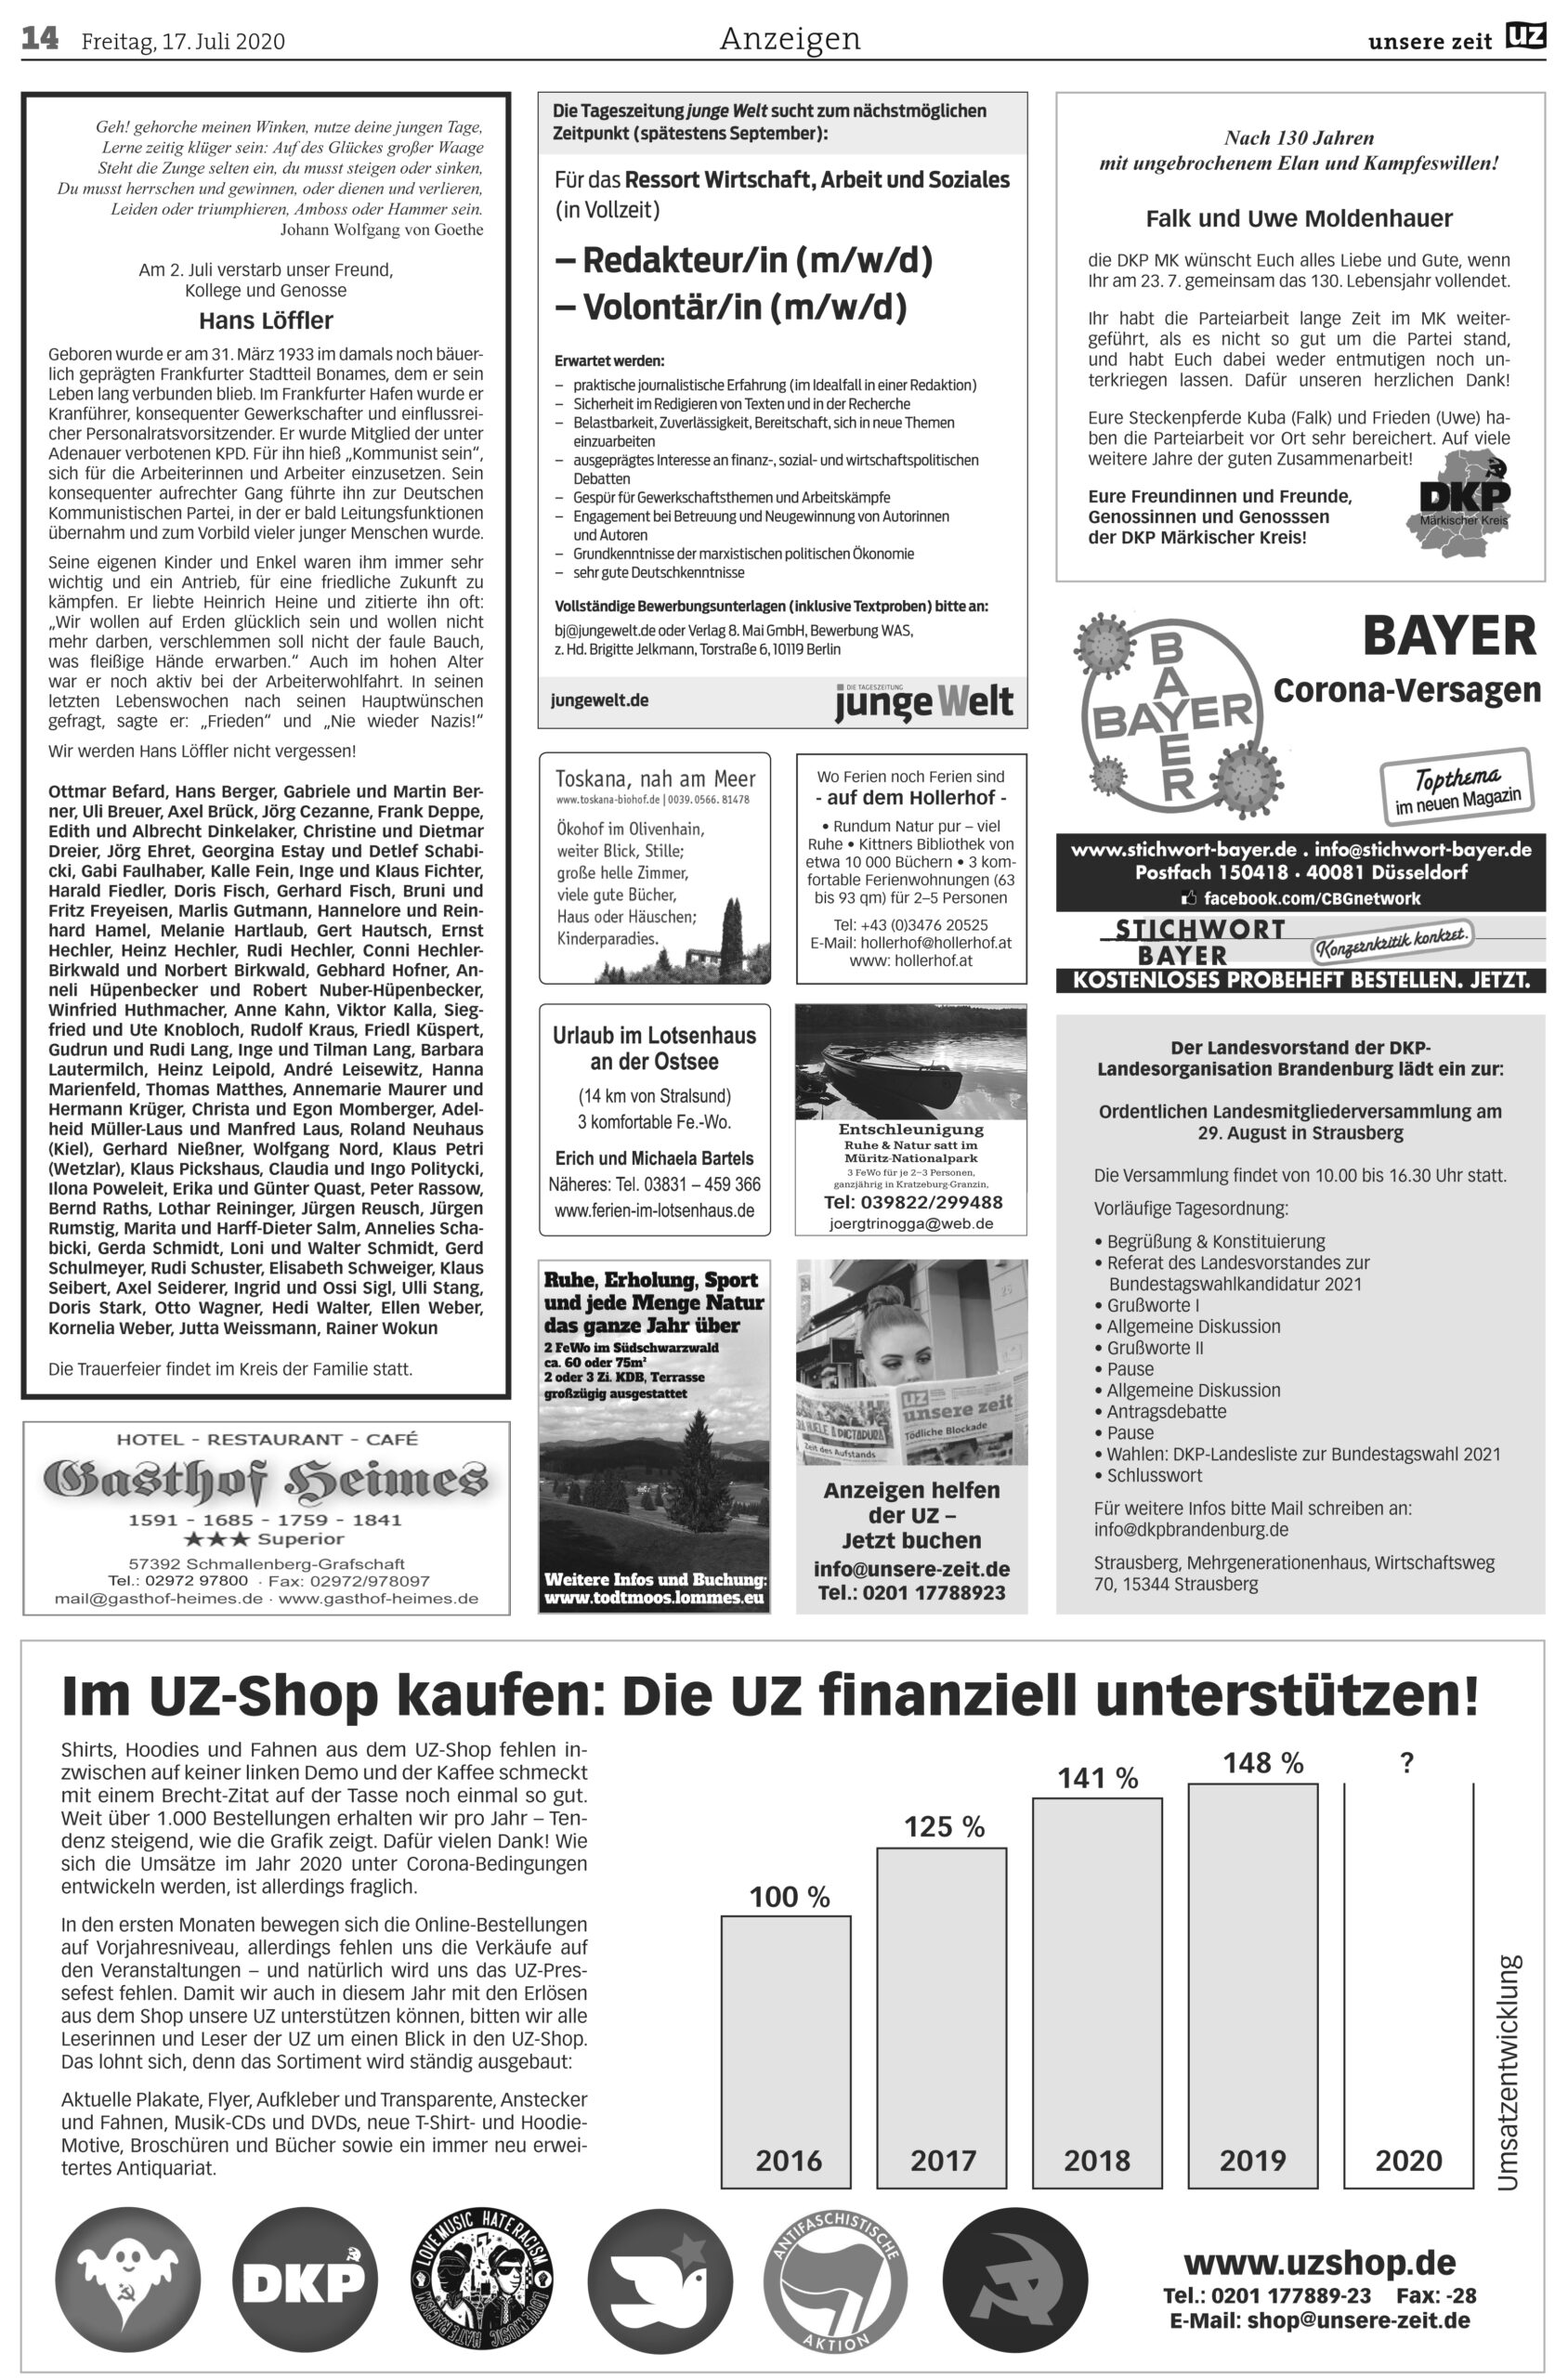 UZ 29 14 scaled - Anzeigen 2020-29 - Anzeigen - Anzeigen